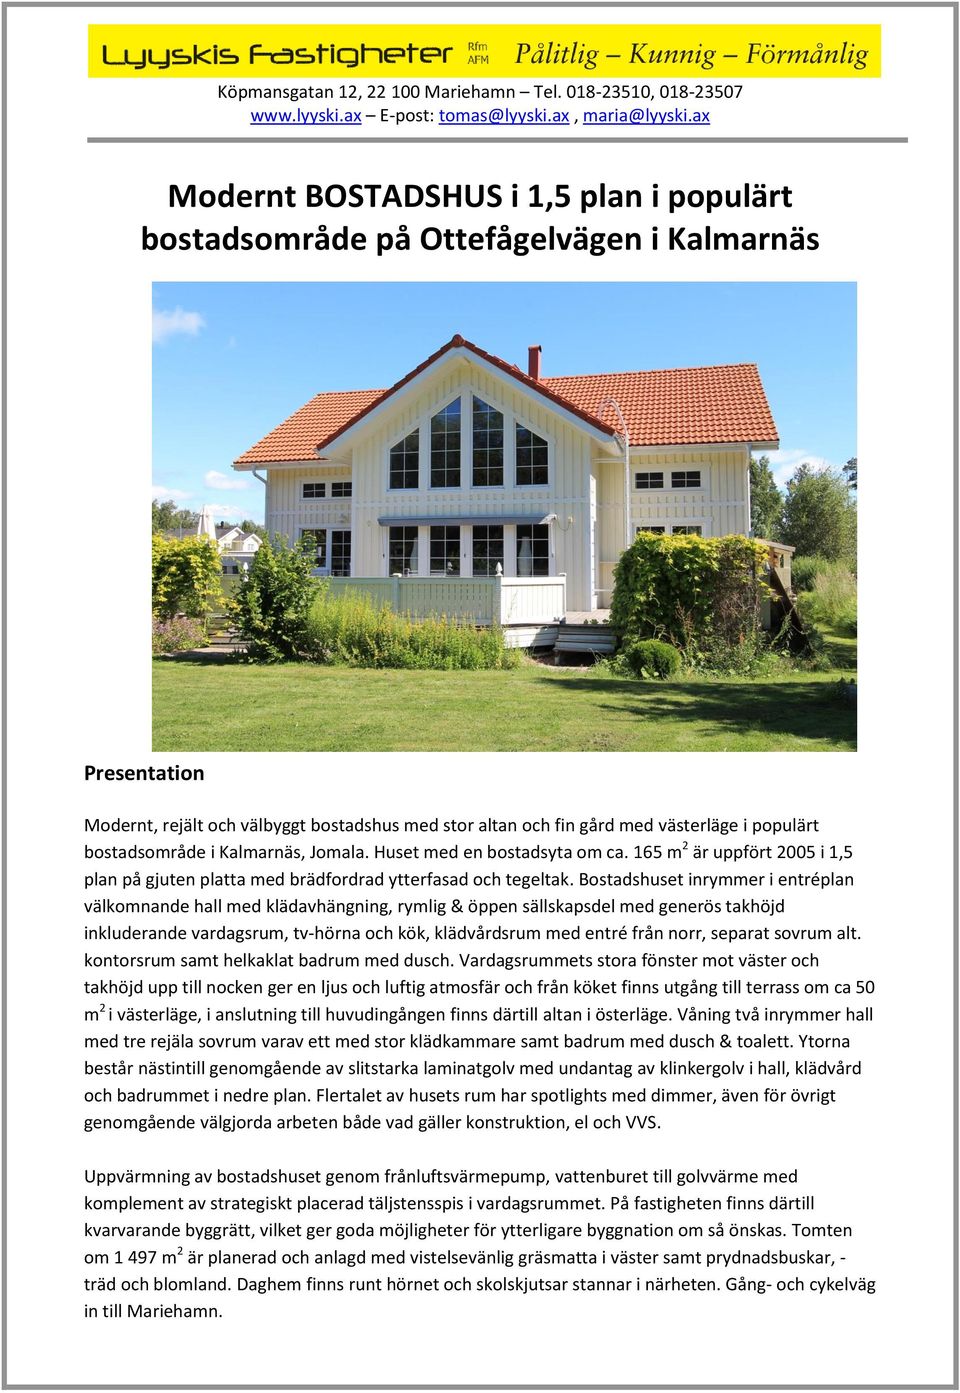 västerläge i populärt bostadsområde i Kalmarnäs, Jomala. Huset med en bostadsyta om ca. 165 m2 är uppfört 2005 i 1,5 plan på gjuten platta med brädfordrad ytterfasad och tegeltak.